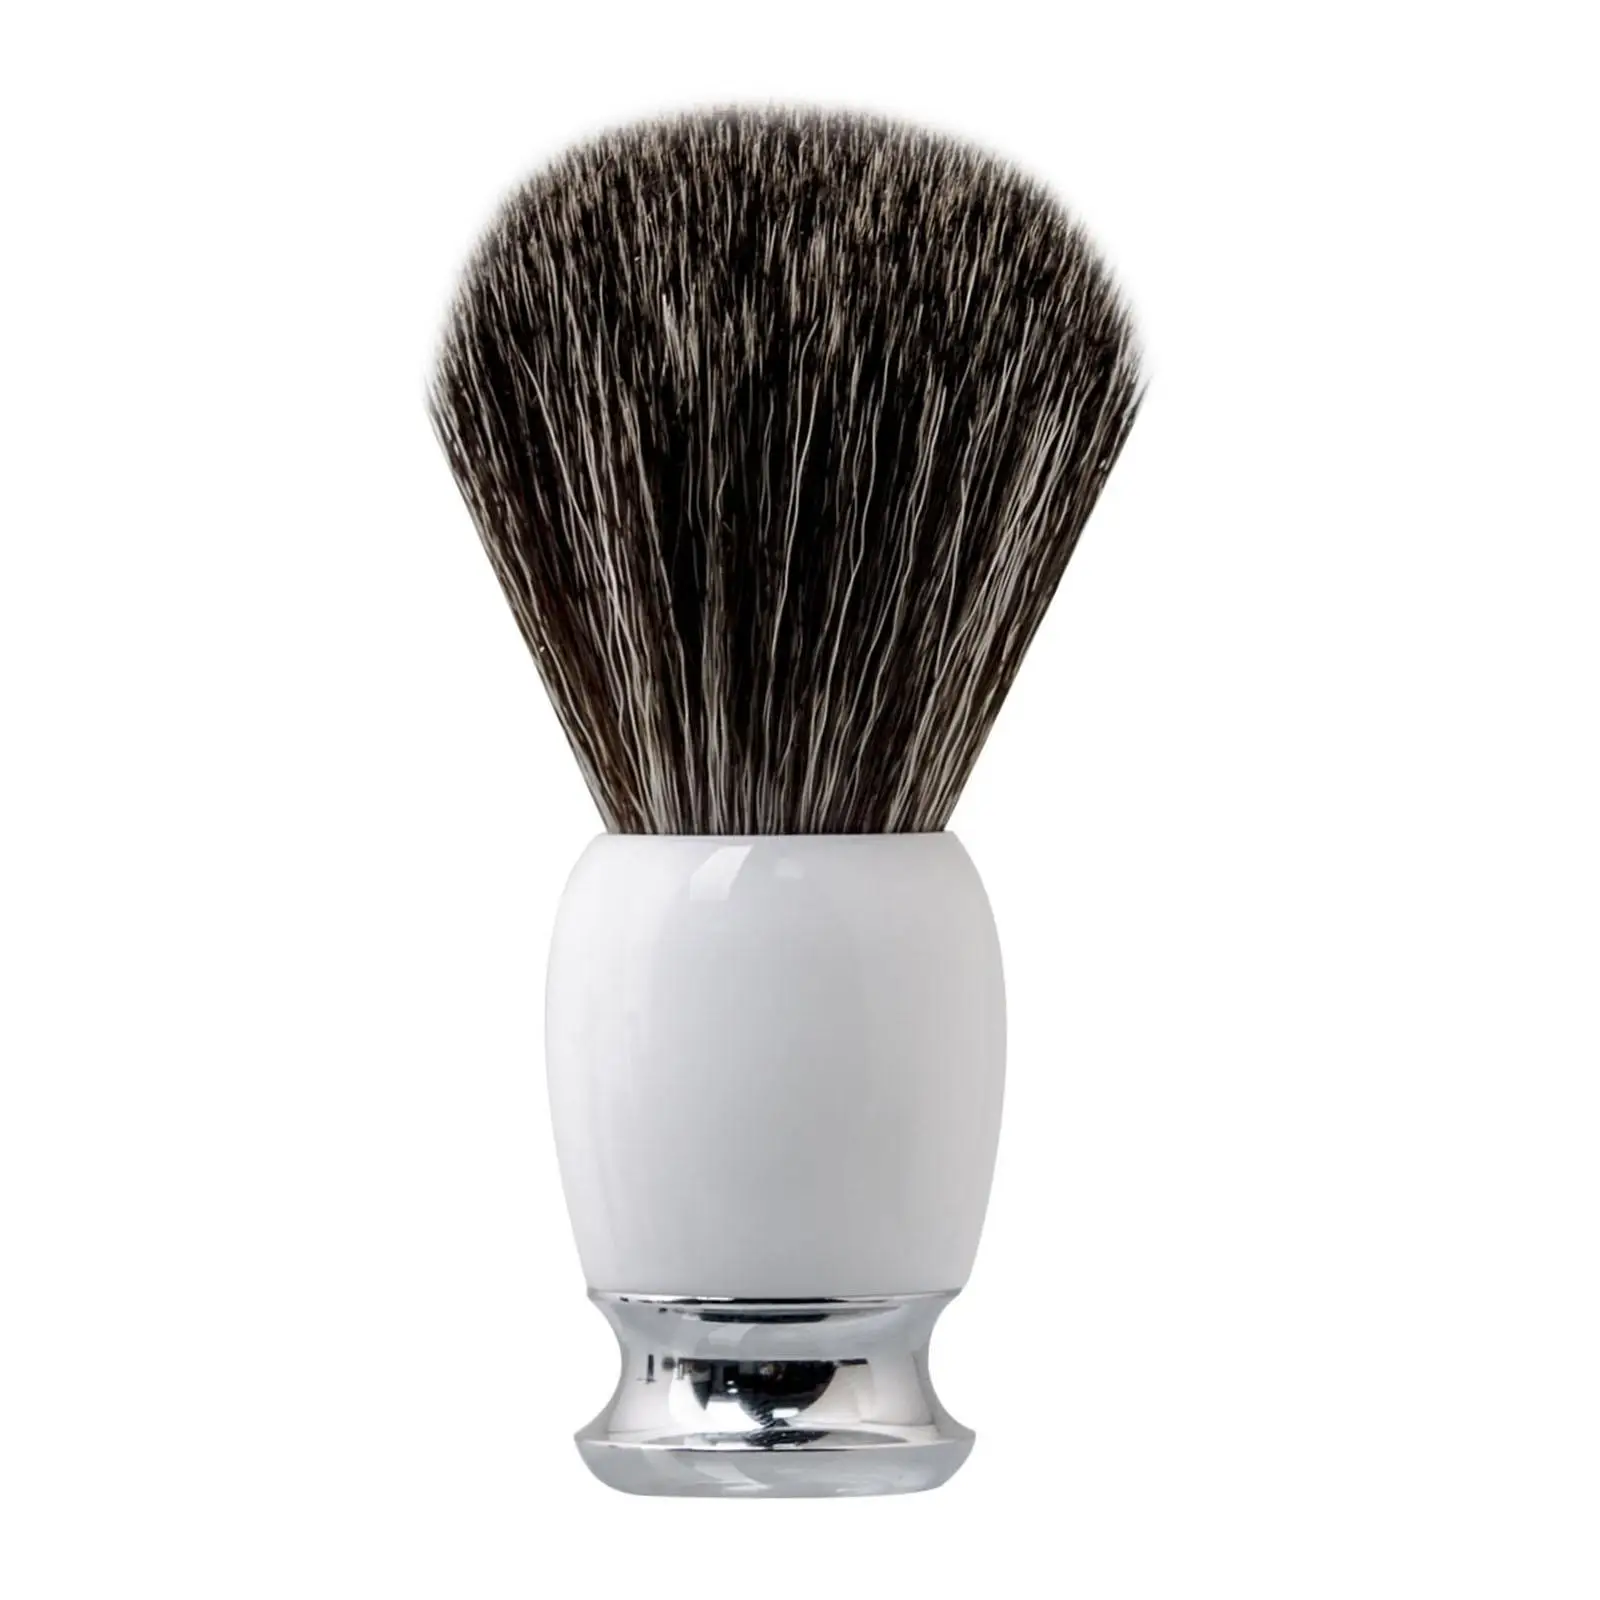 

Men's Shaving Brush Beard Brush Resin Handle Professional Rich and Fast Lather Shaving Cream Wet Shave Travel Barber Shave Brush